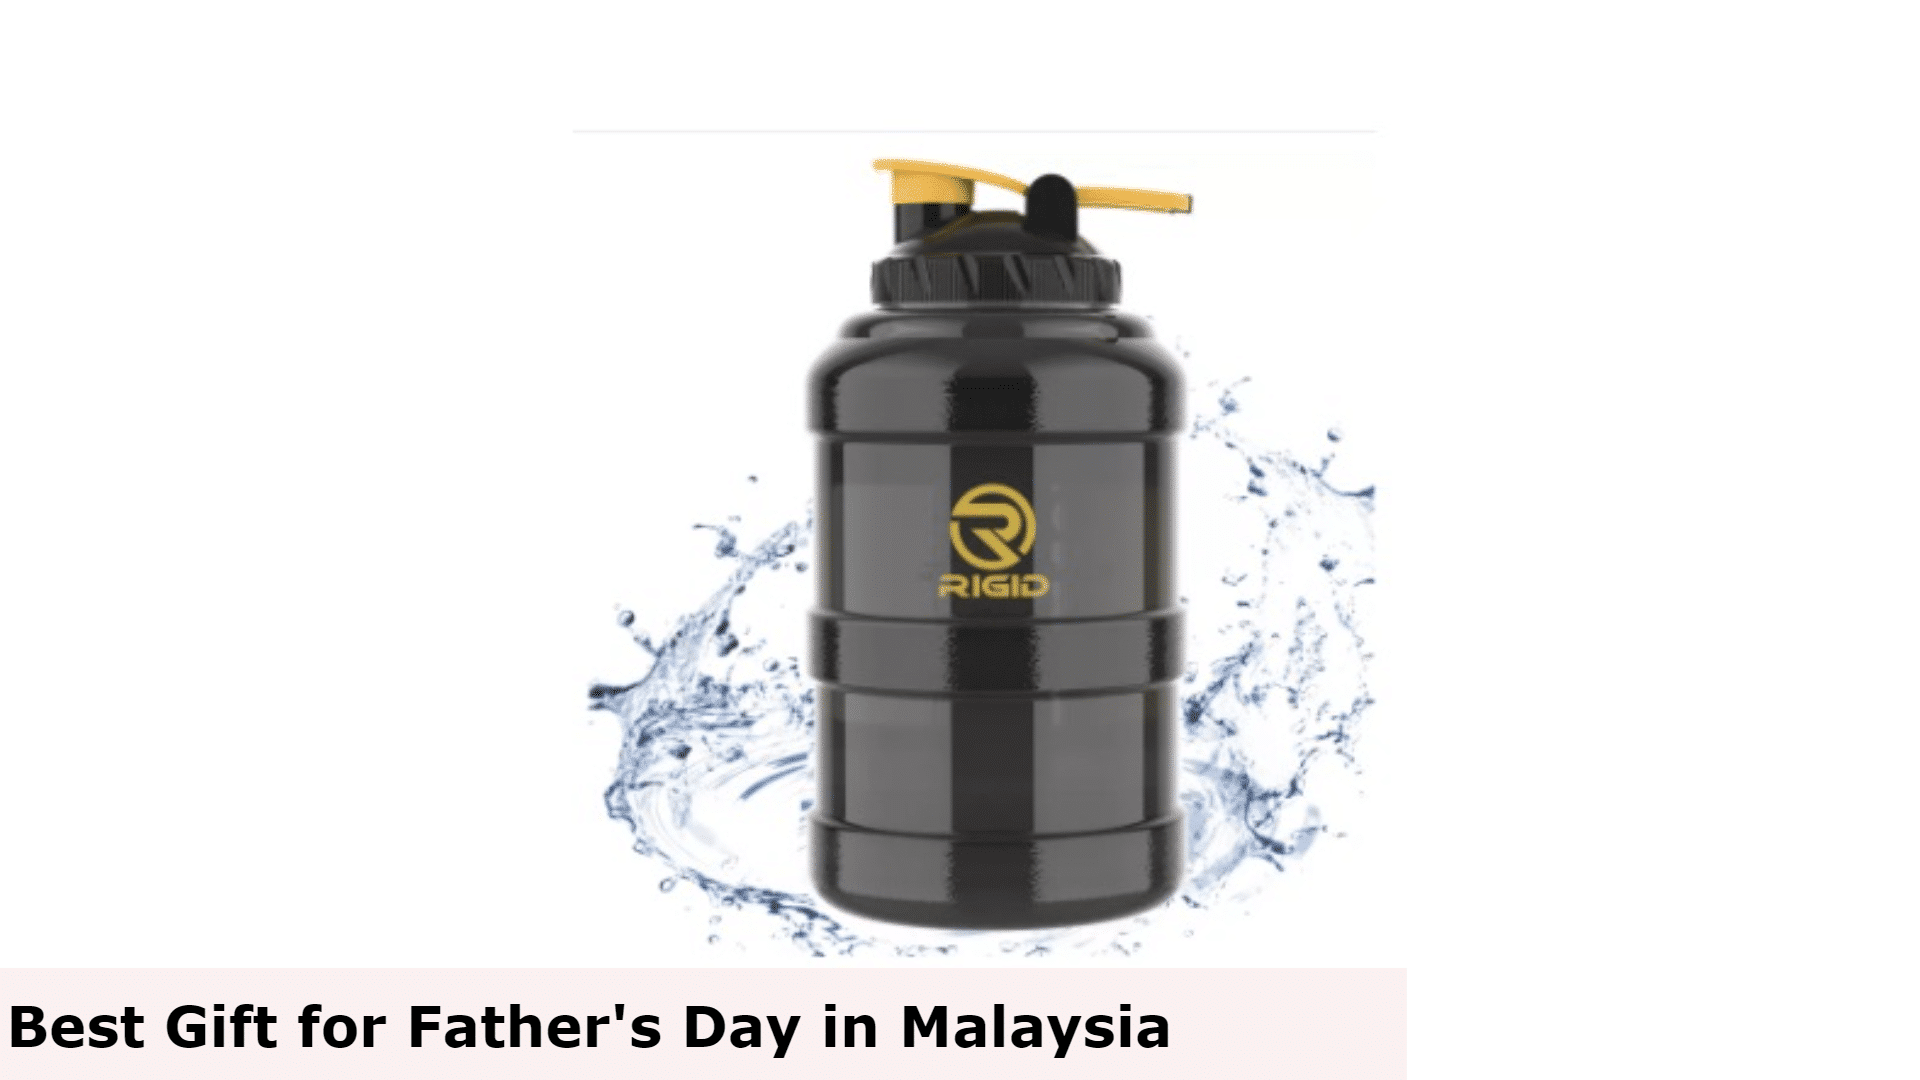 Botol Air - Hadiah Terbaik untuk Hari Bapa di Malaysia, Hadiah Terbaik untuk Hari Bapa Malaysia, Hadiah Hari Bapa Terbaik untuk Ayah, Apa yang ayah mahukan untuk Hari Bapa di Malaysia?, Apakah hadiah murah yang bagus untuk Hari Bapa di Malaysia?, Adakah anda memberi hadiah pada Hari Bapa di Malaysia?, hadiah untuk ayah yang tidak mahu apa-apa, idea hadiah hari bapa yang ringkas, idea hadiah hari bapa 2022, hadiah hari bapa' idea semasa covid, idea hadiah hari bapa daripada anak perempuan, hadiah unik untuk ayah, idea hadiah hari bapa daripada isteri, hadiah hari bapa daripada anak lelaki, Apa yang dibeli untuk ayah yang tidak mahu apa-apa?, Apa yang perlu ayah yang sukar dibeli?, Apa yang perlu saya dapatkan ayah saya yang membosankan untuk Krismas?, Hadiah apa yang ayah suka?,